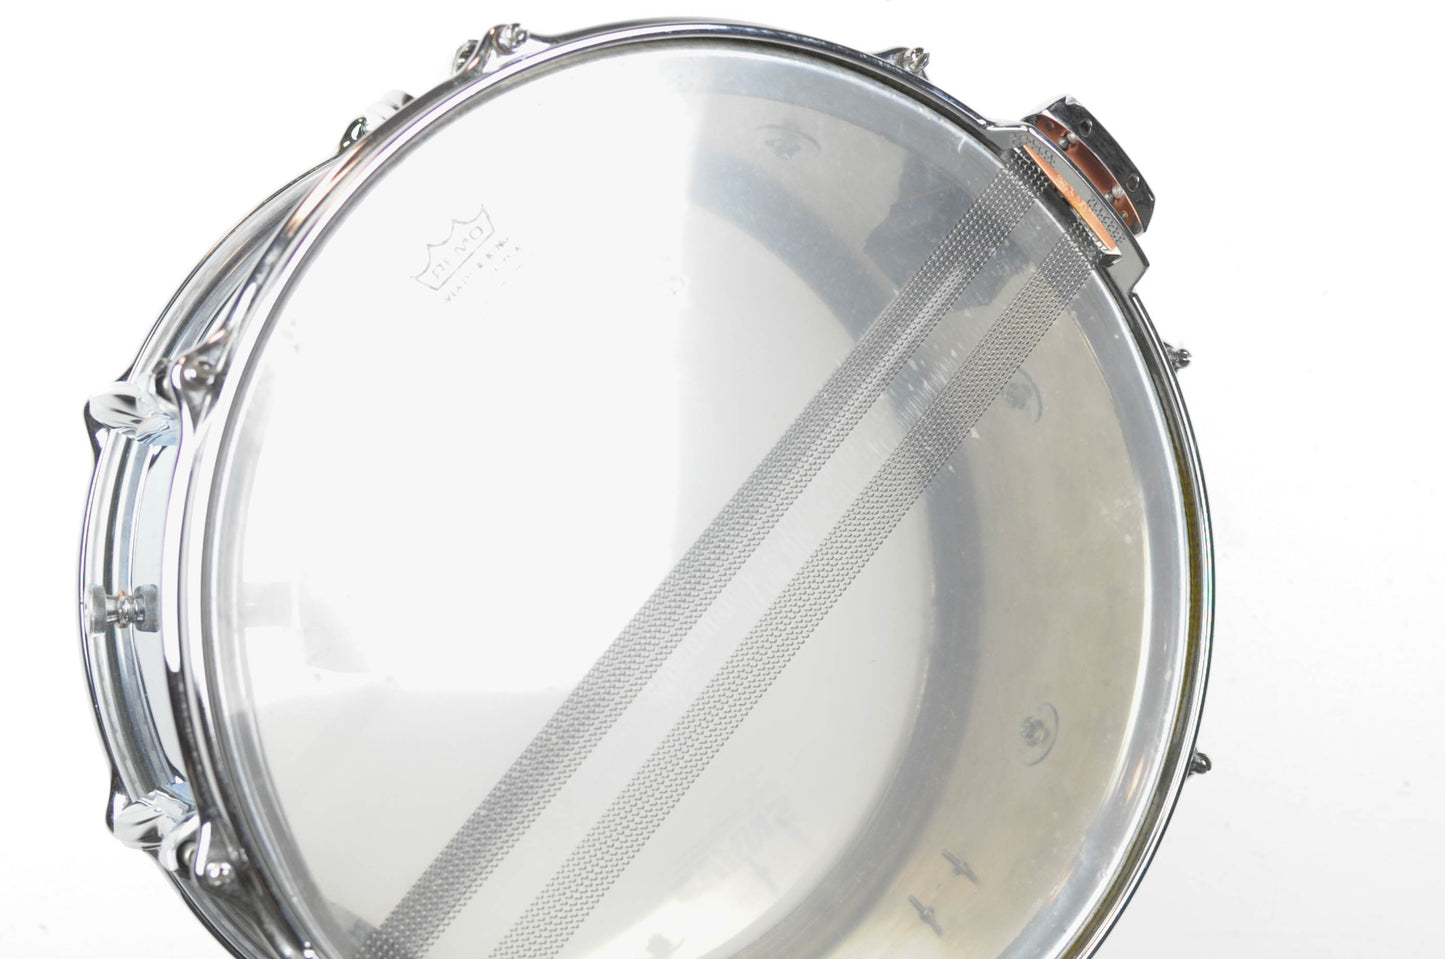 Premier 2003 6.5x14 Aluminum Snare Drum 2000